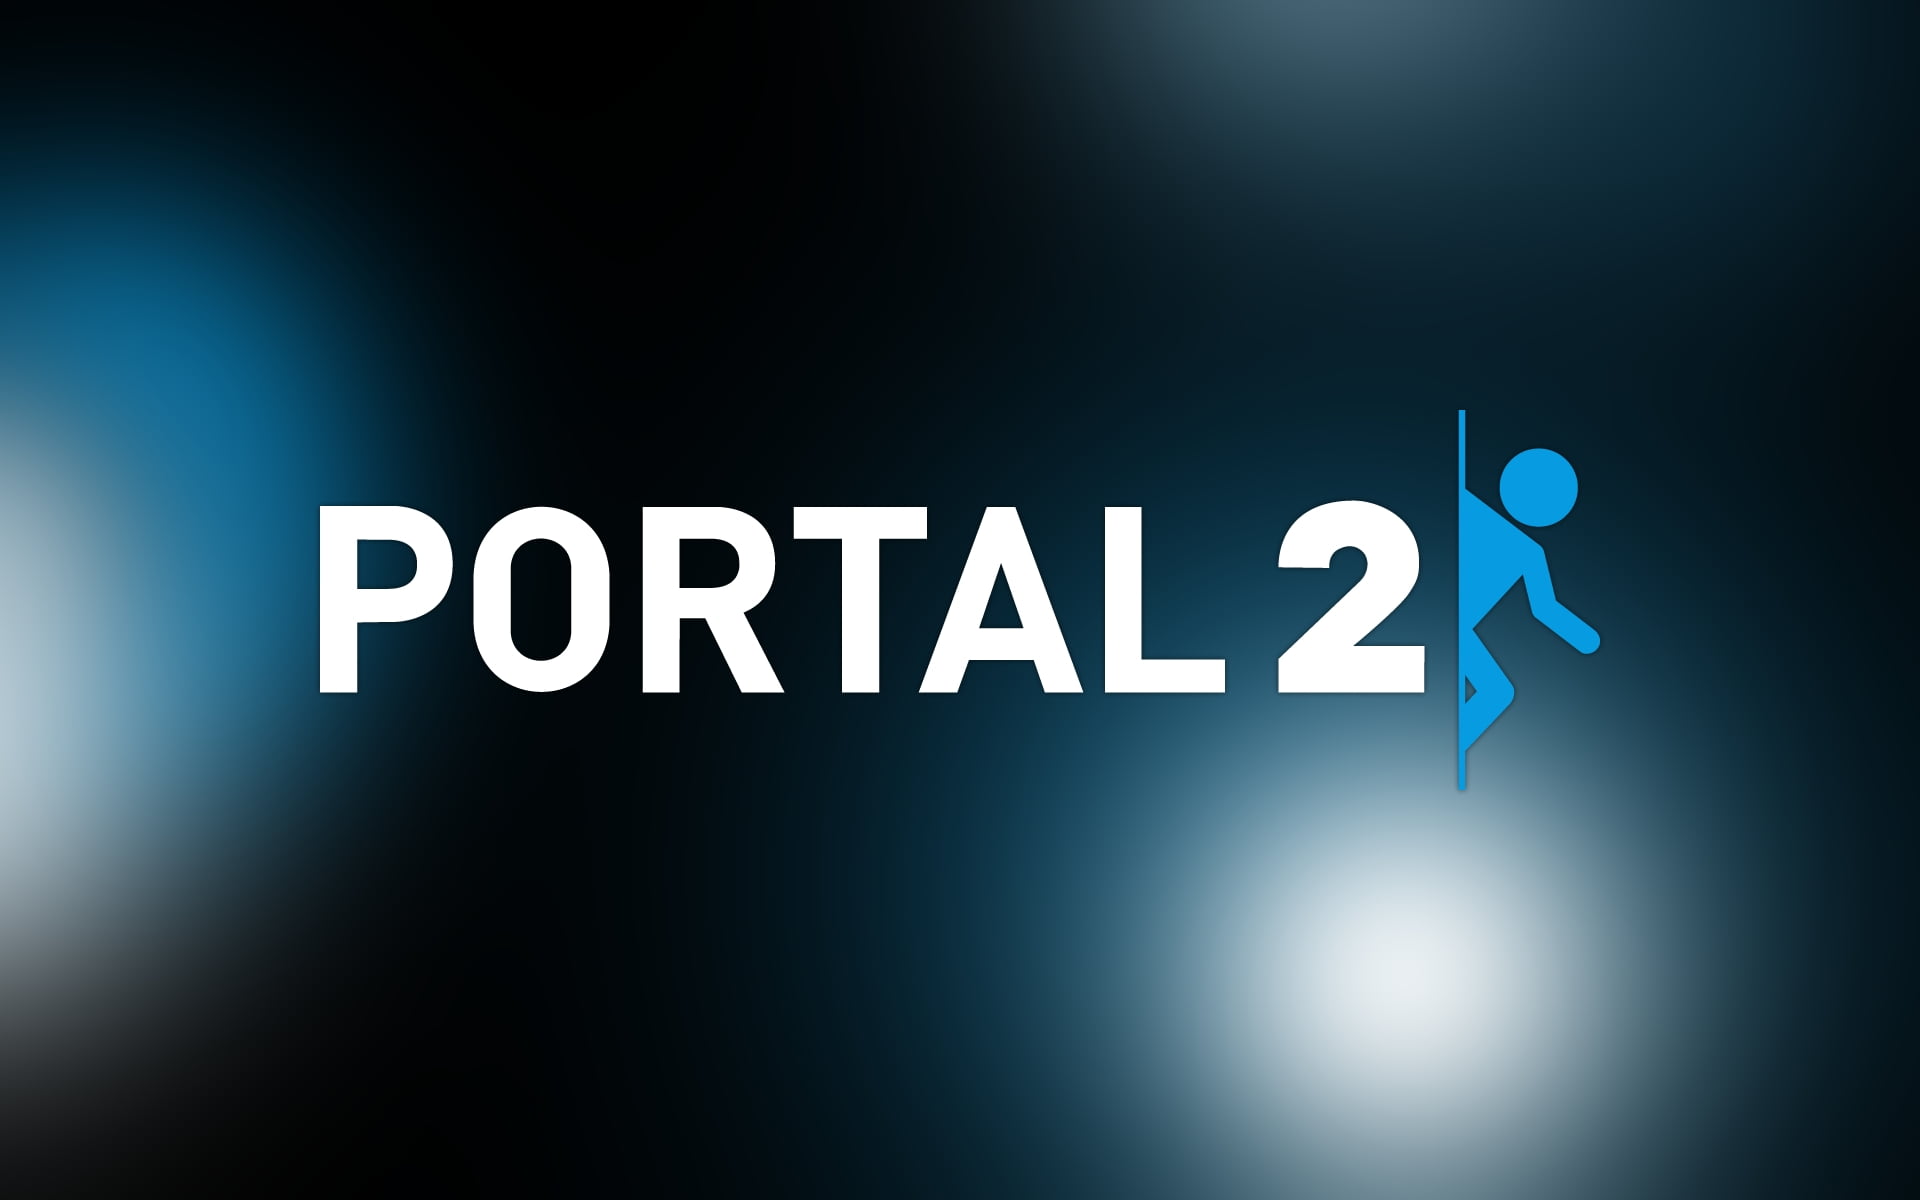 установить portal 2 бесплатно фото 85